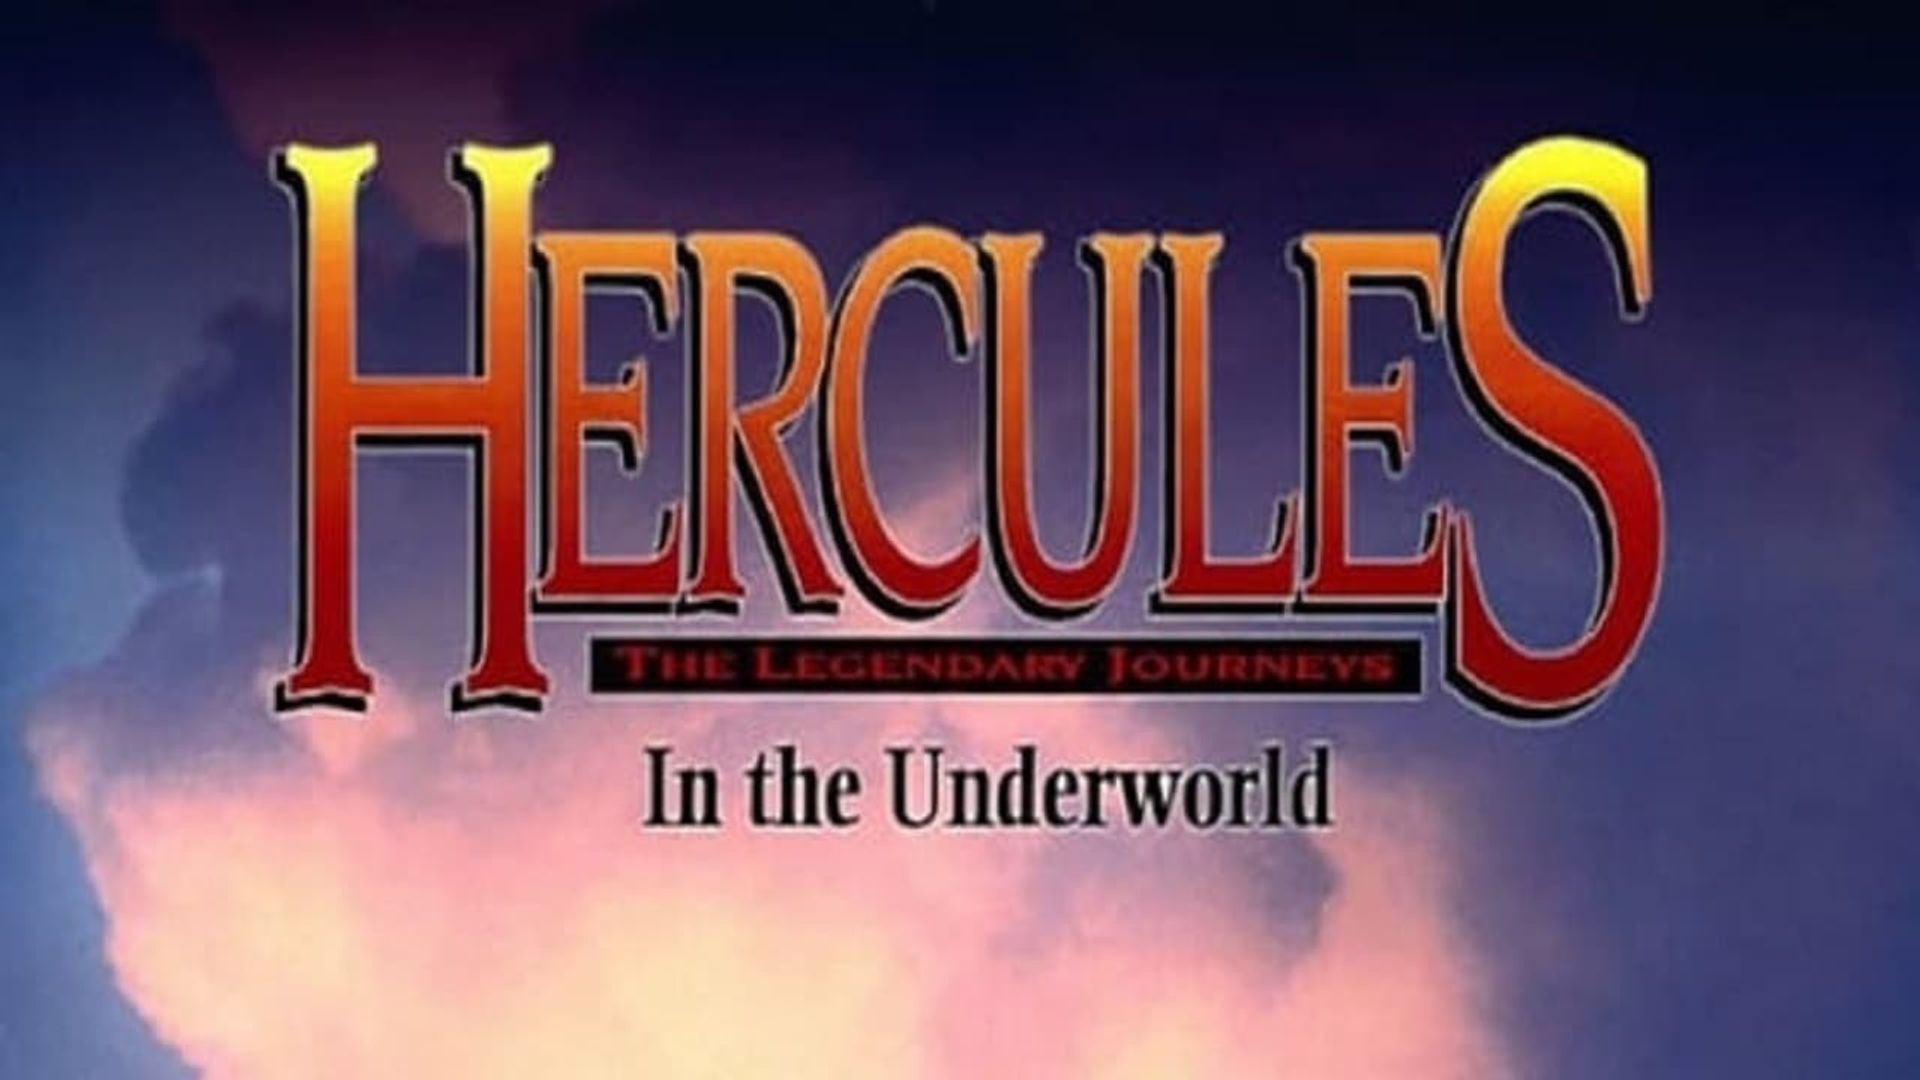 Hercules in the Underworld Backdrop